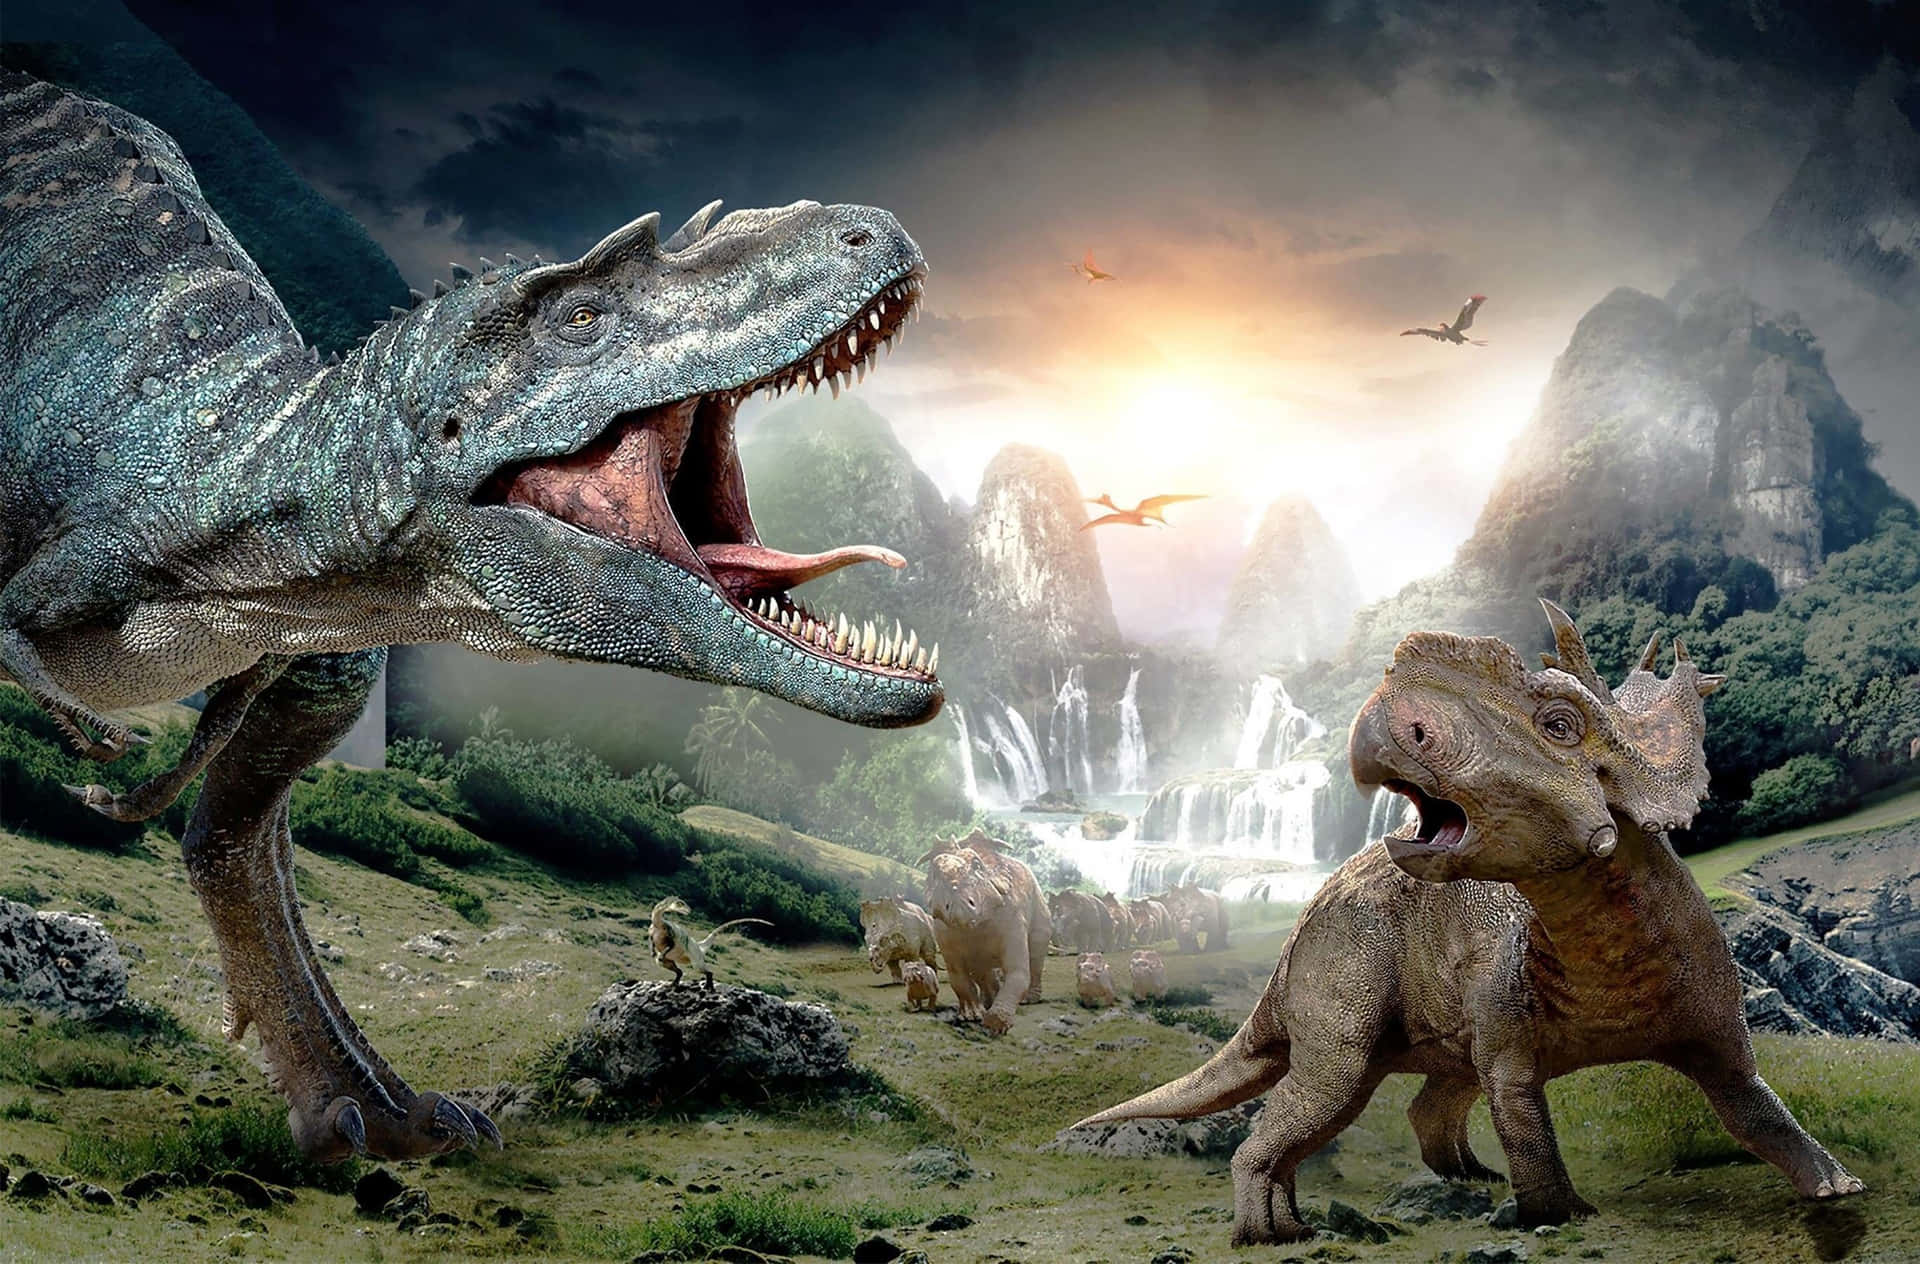 Enkæmpestor Herbivore Dinosaur Står I Et Smukt, Mystisk Landskab.